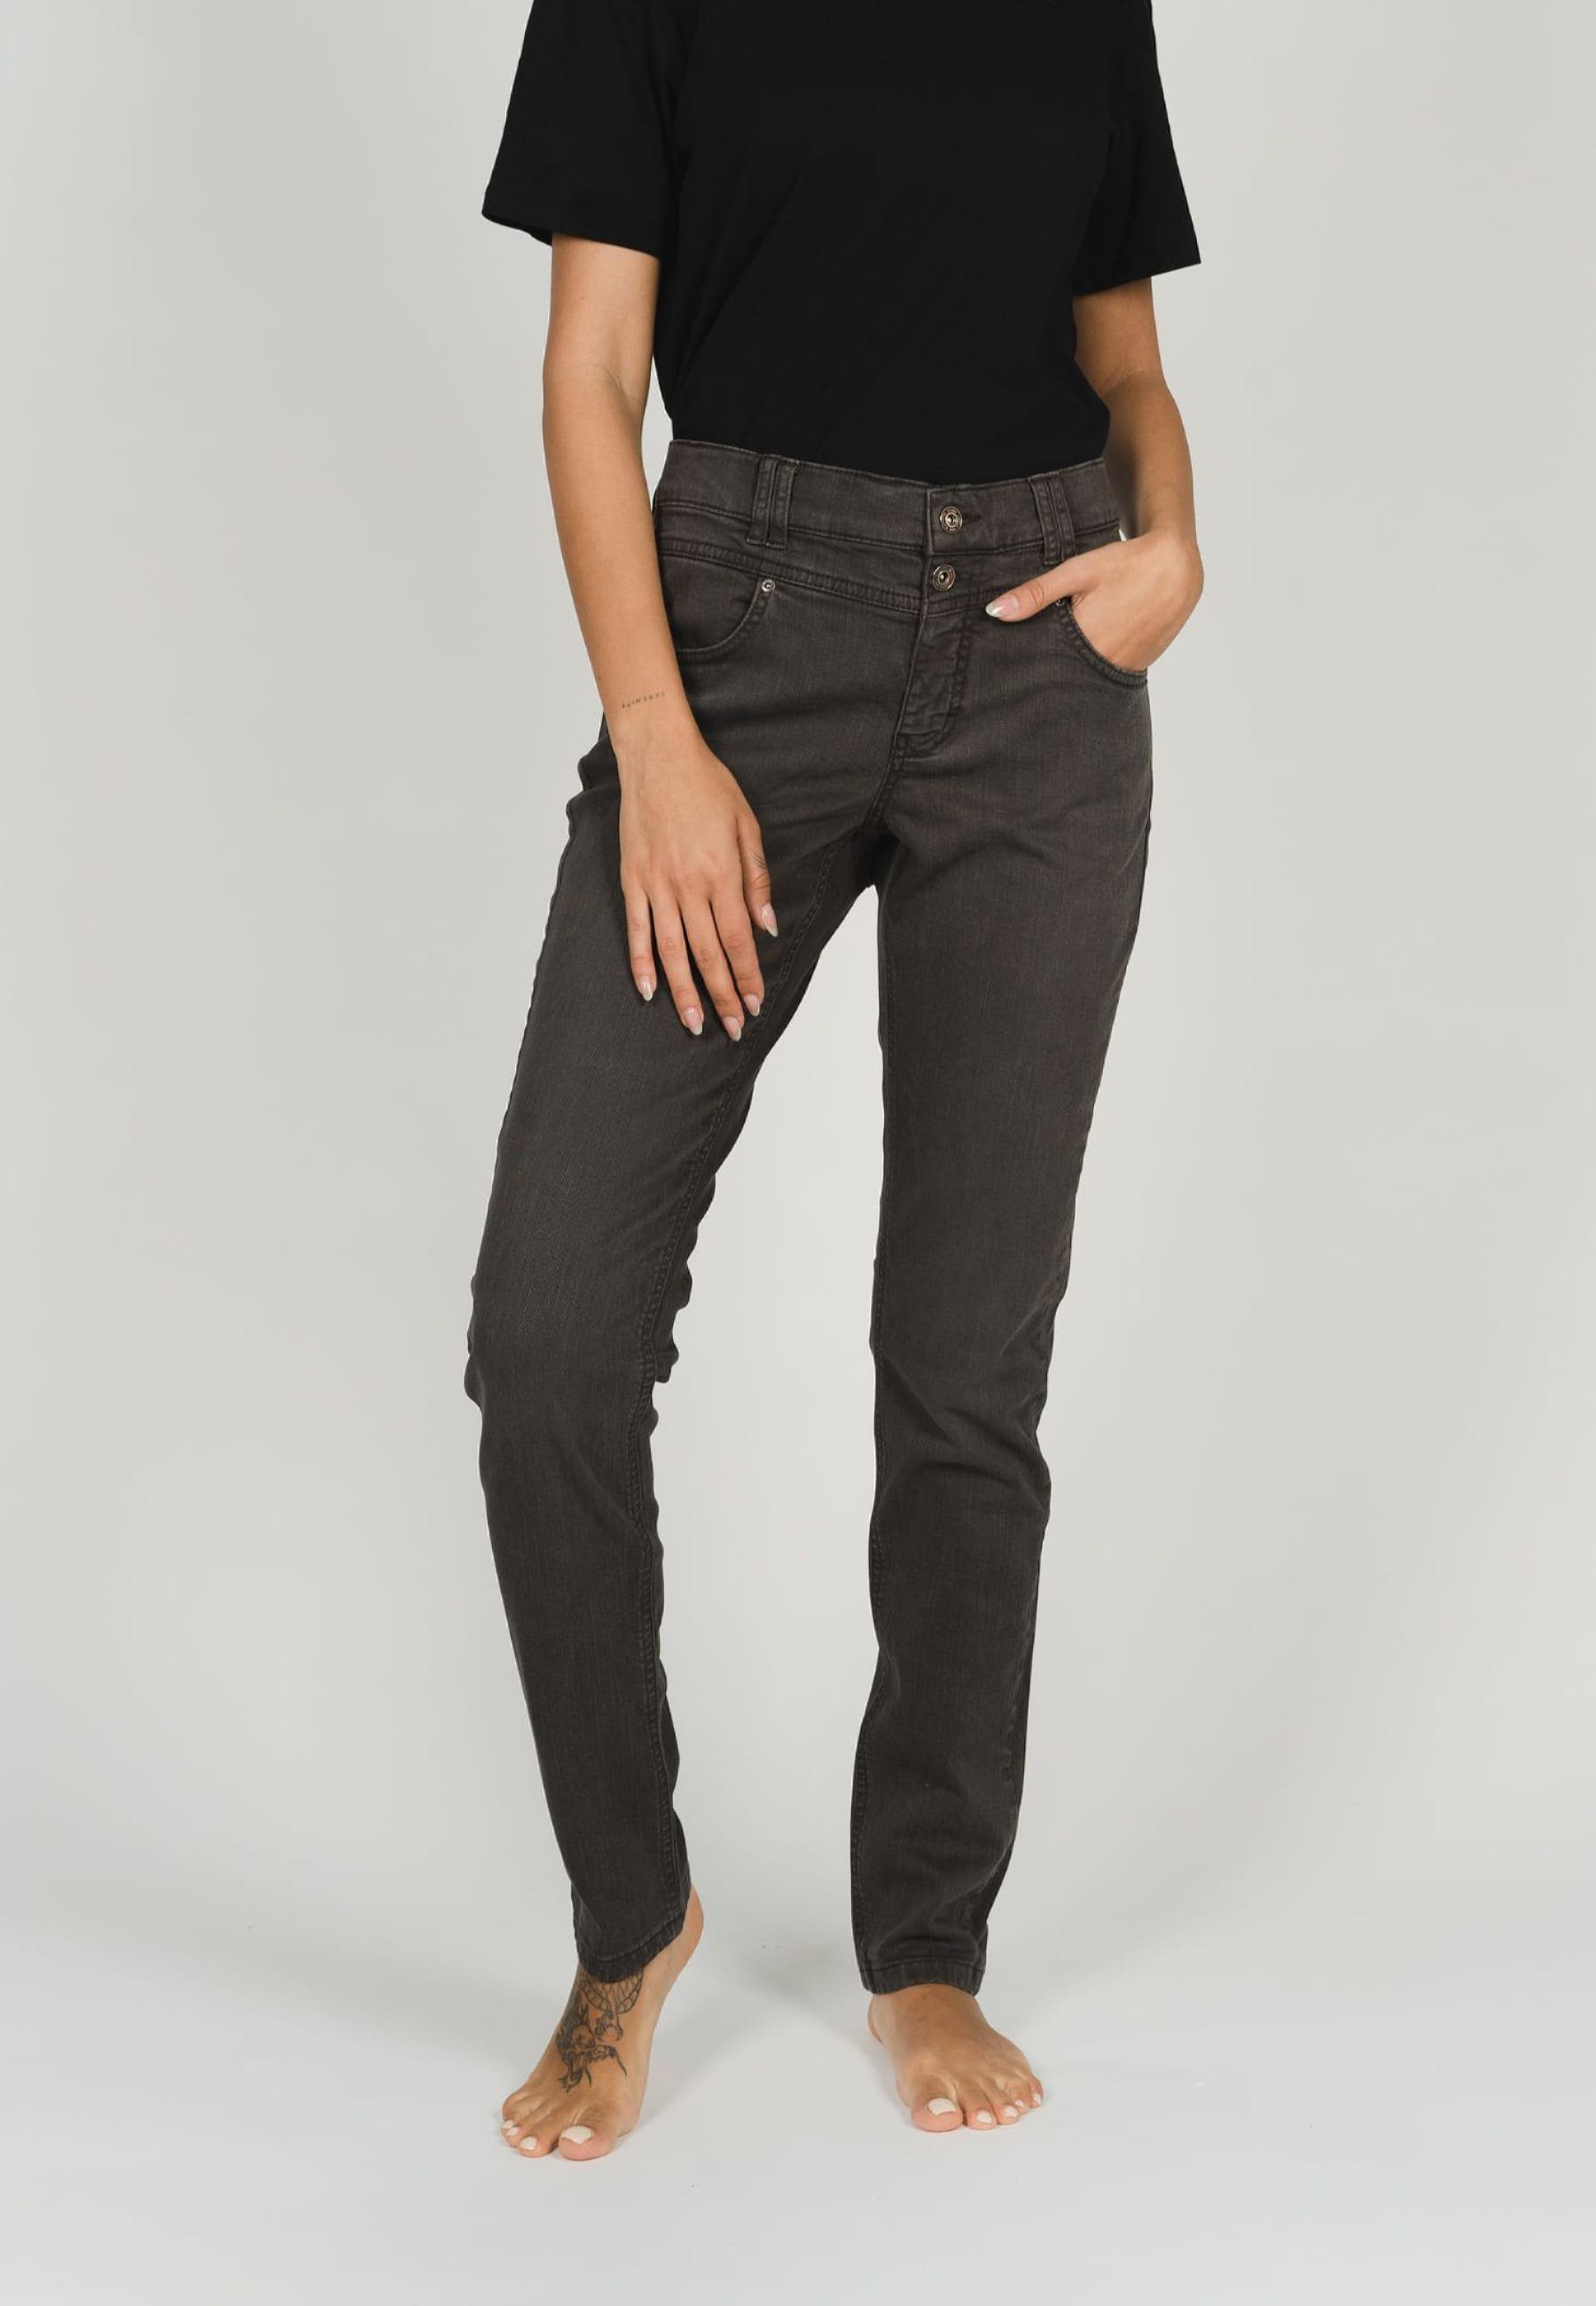 Coloured ANGELS Jeans Hochwertige Baumwollmischung Skinny Slim-fit-Jeans Denim, mit Button